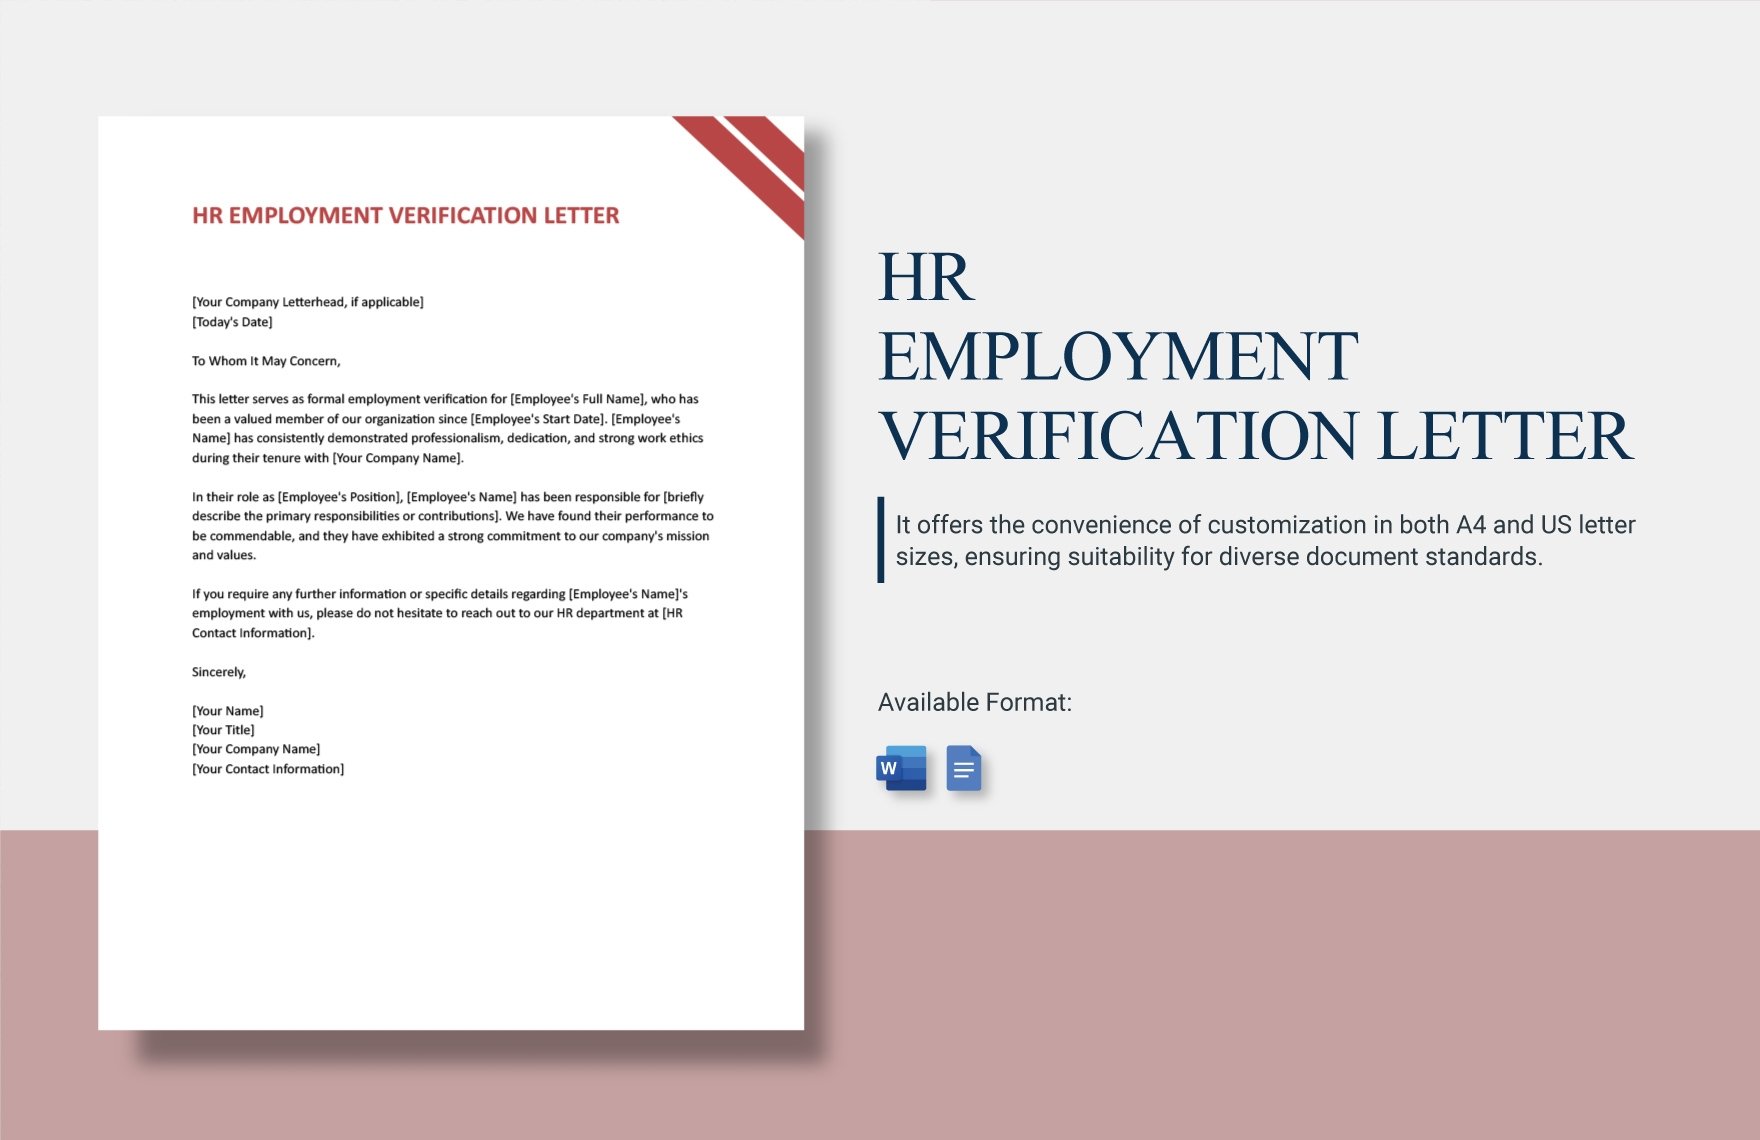 HR Employment Verification Letter